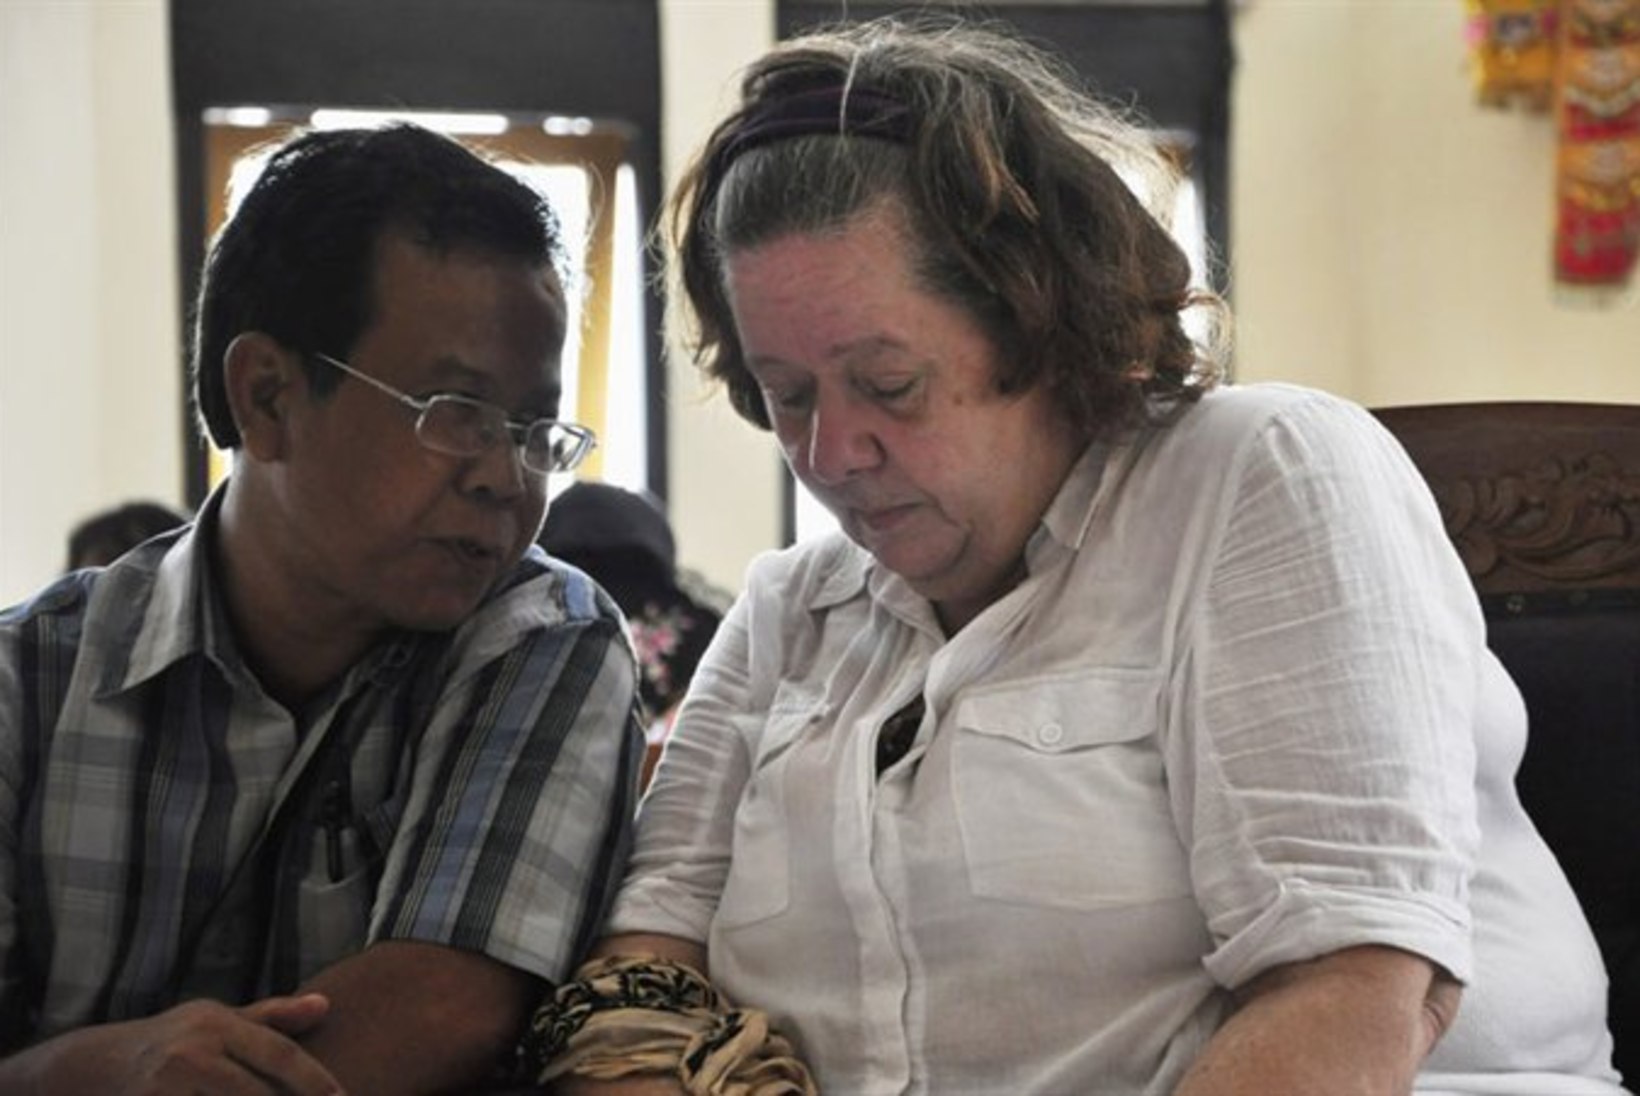 Indoneesia kohus mõistis briti vanaema kokaiini smugeldamise eest surma